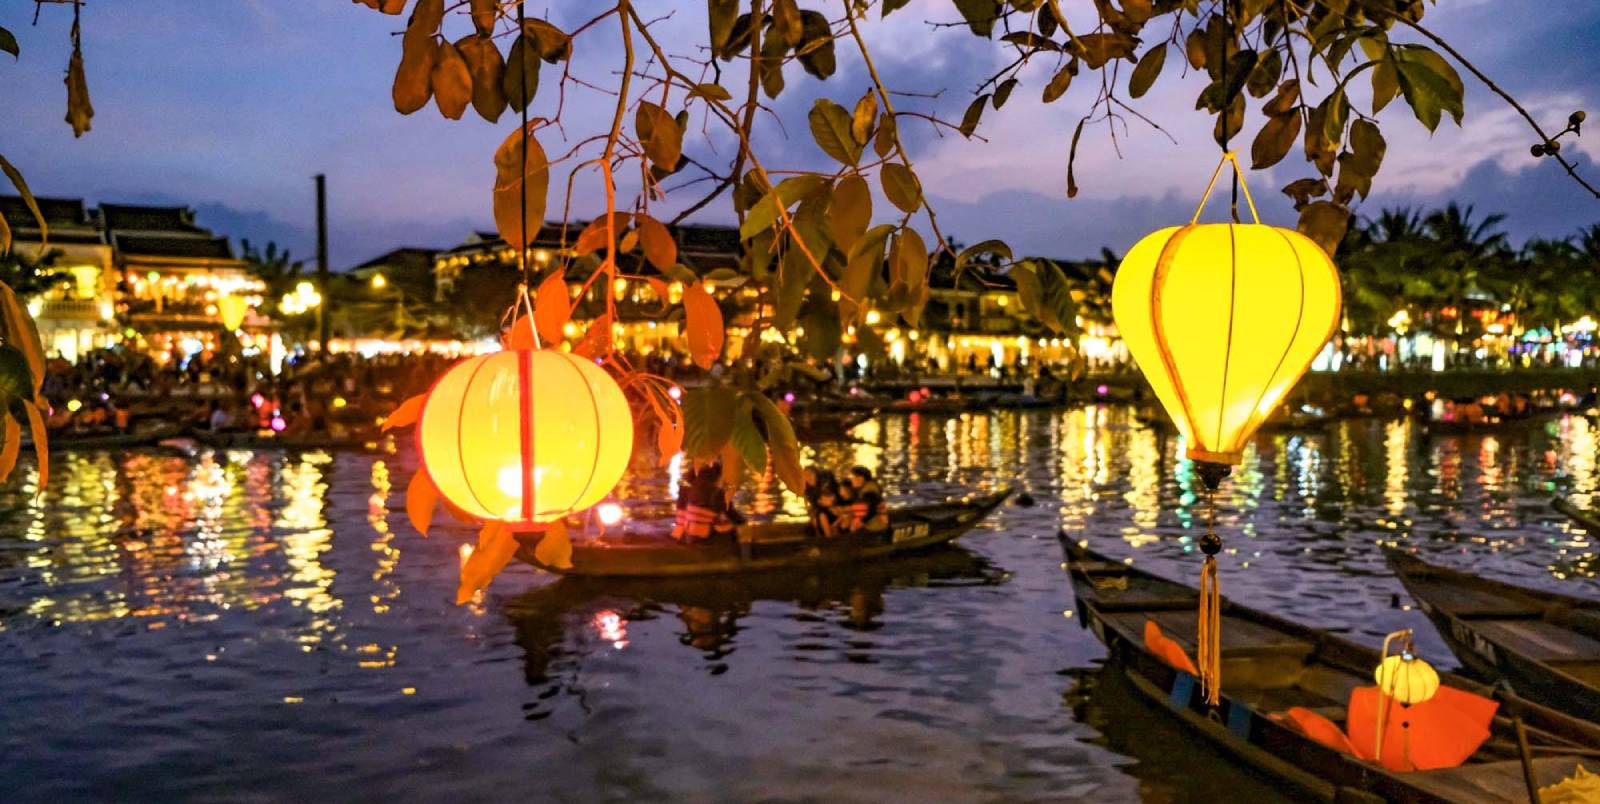 Hoi An Lantern Festival| Ancient Orient Journeys